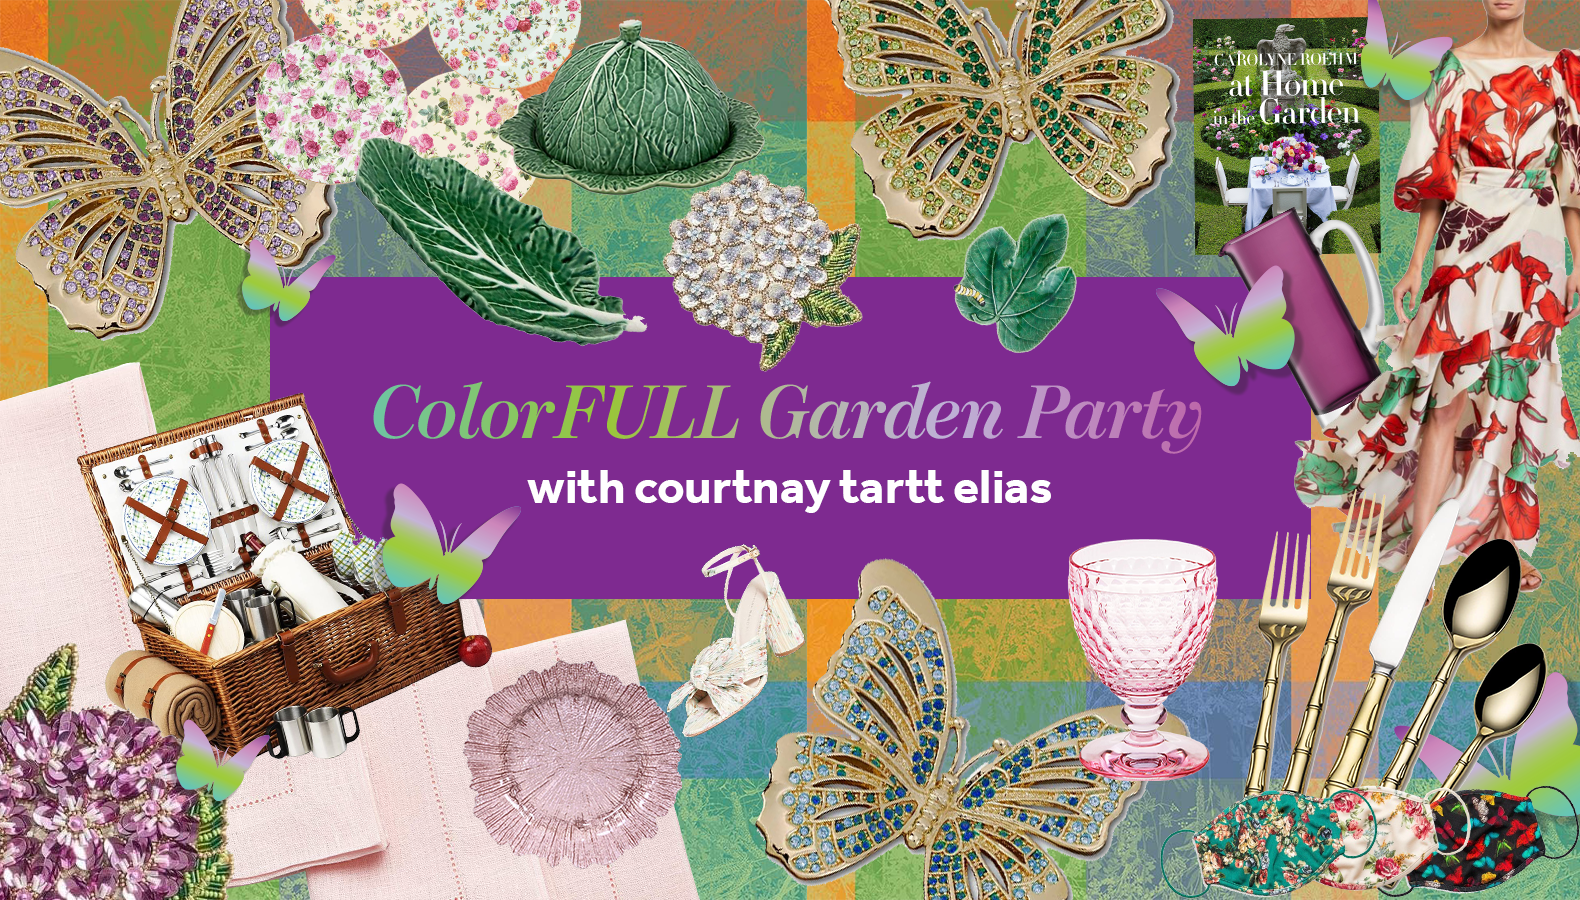 ColorFULL Garden Party